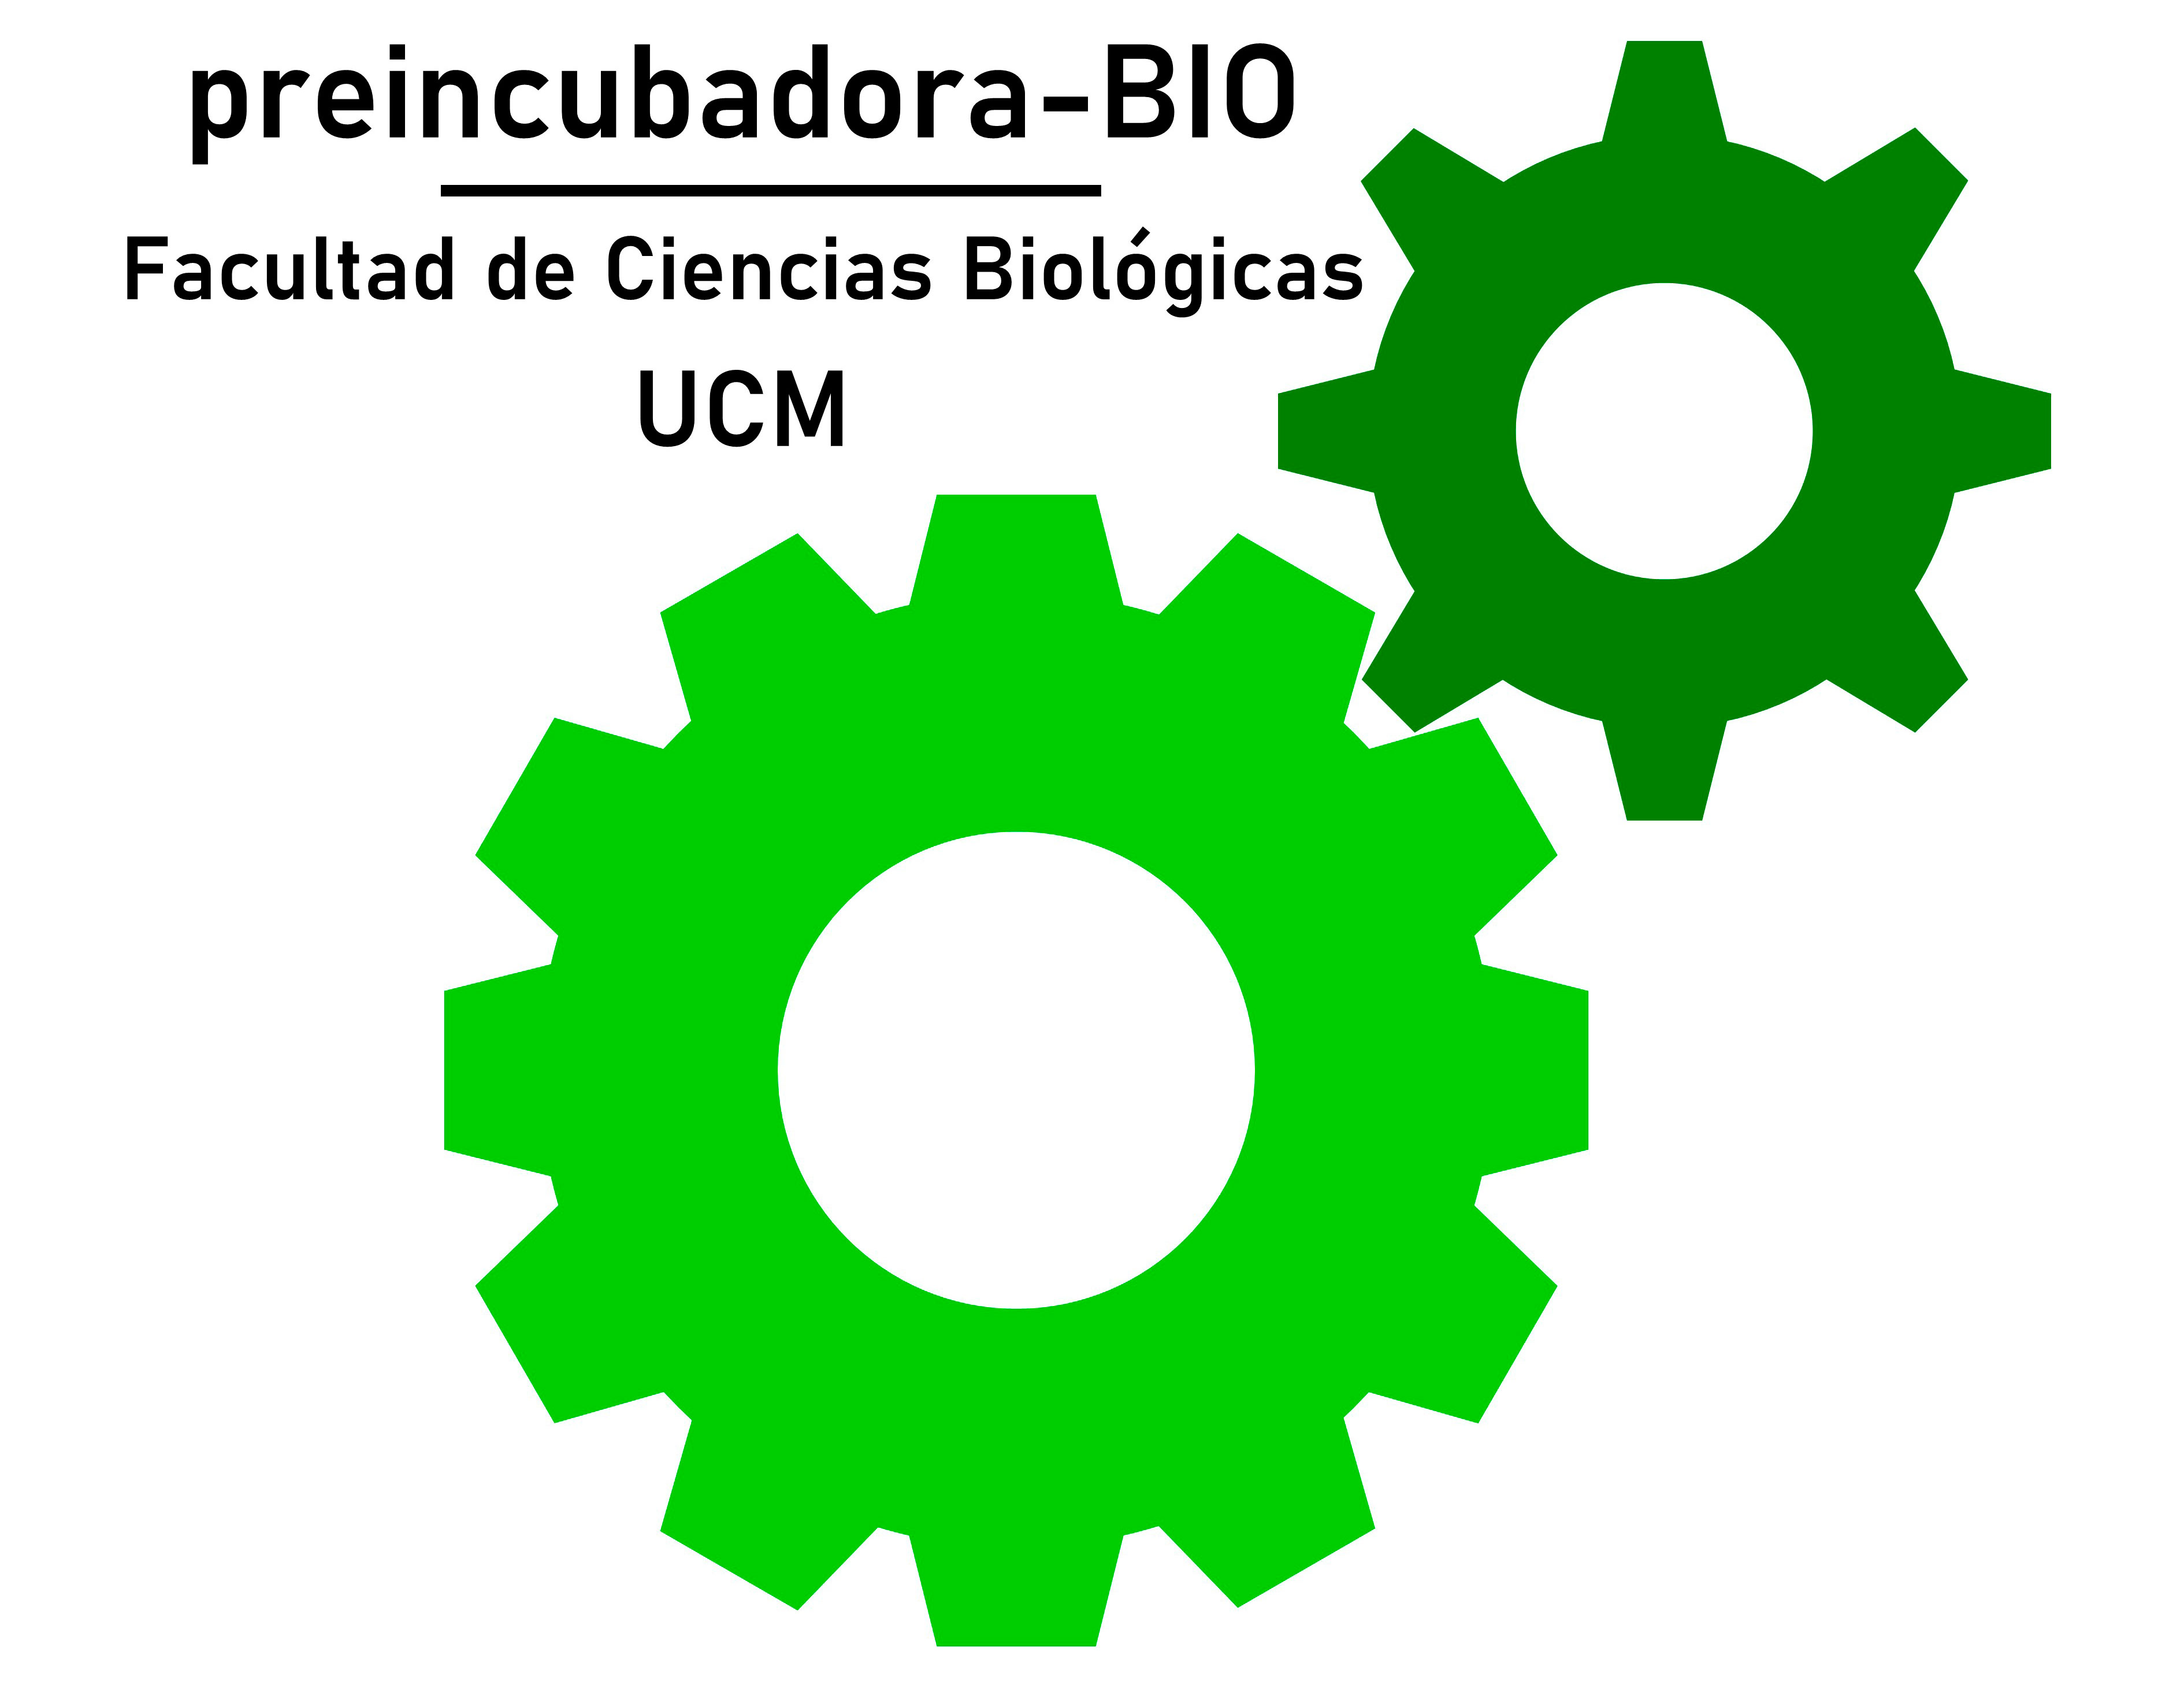 Jornada de visita a la Bioincubadora de la Facultad. 30 de enero de 2023.